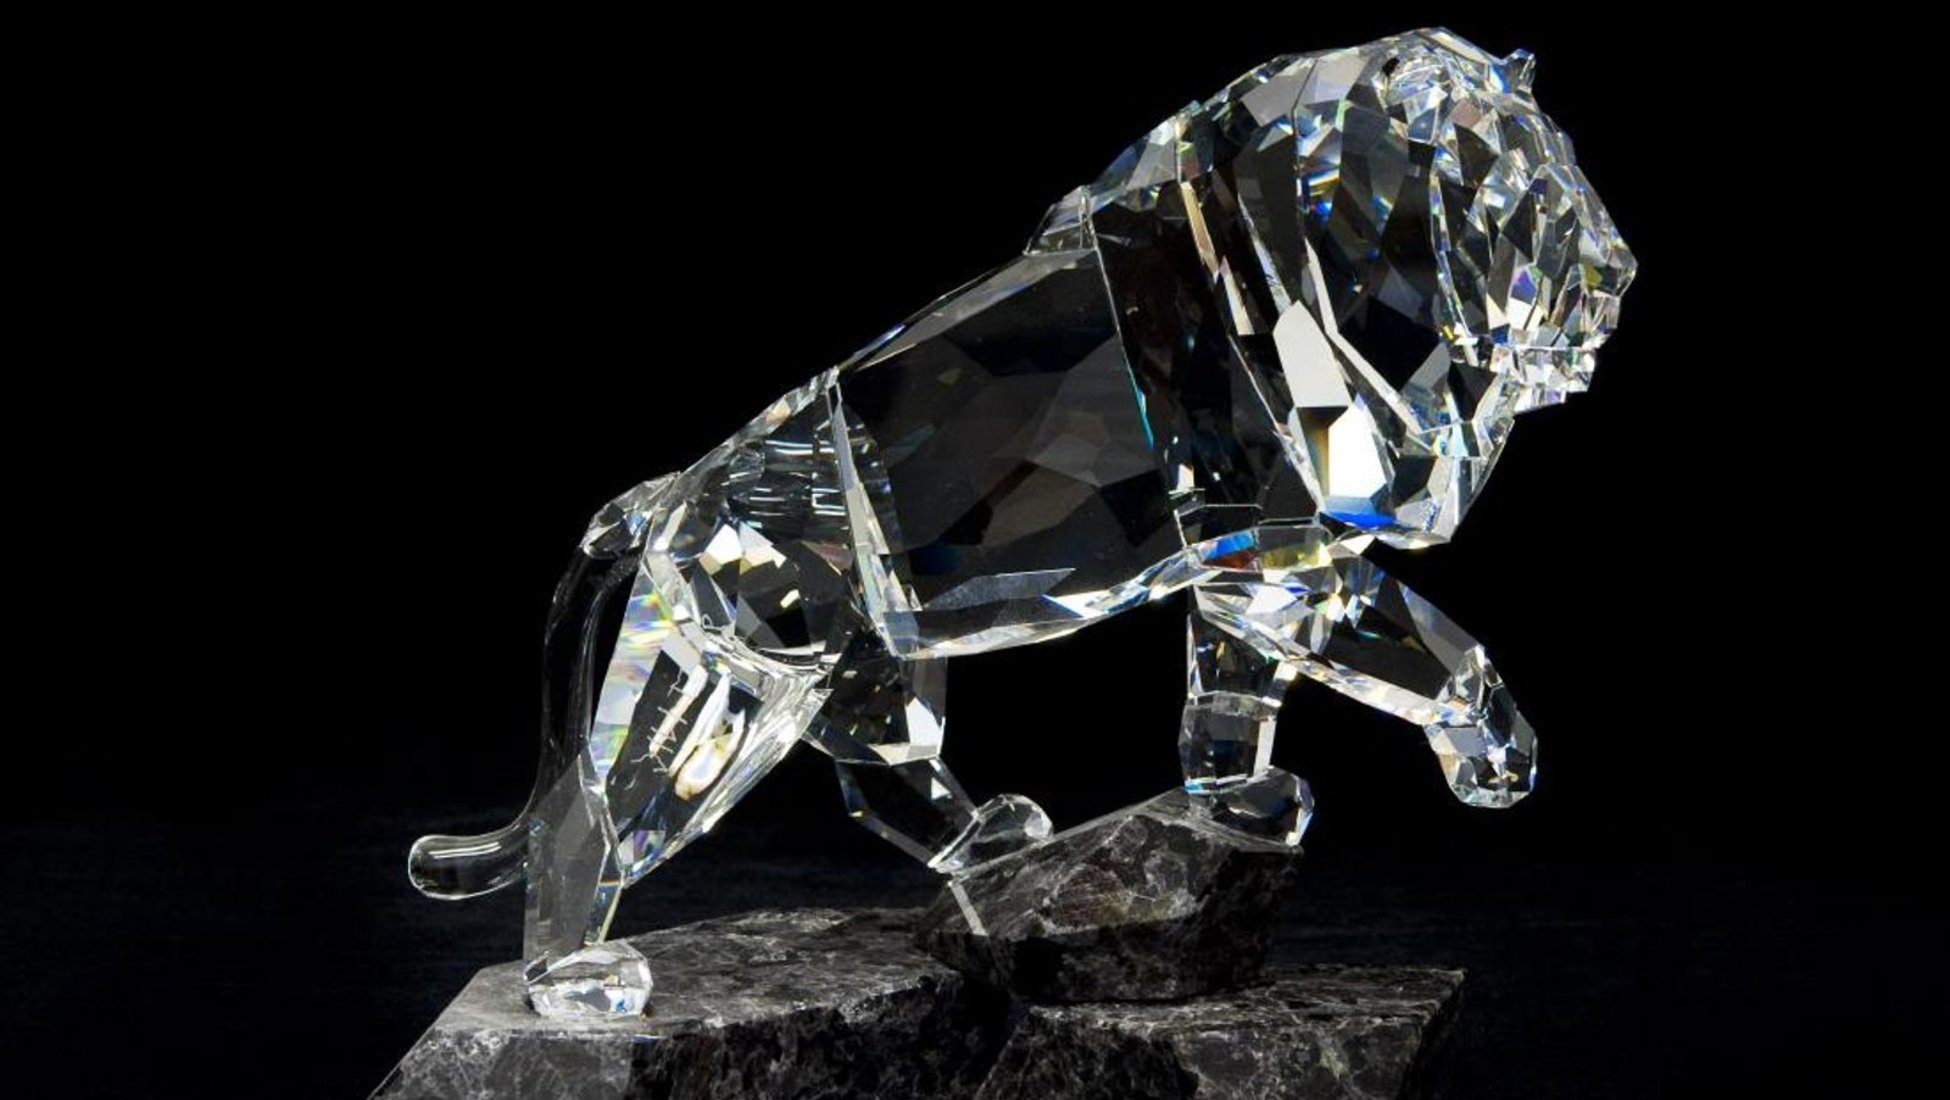 При сравнении кристалла Сваровски с имитацией, подлинный Сваровски будет выделяться из имитации благодаря своей стеклянной составляющей